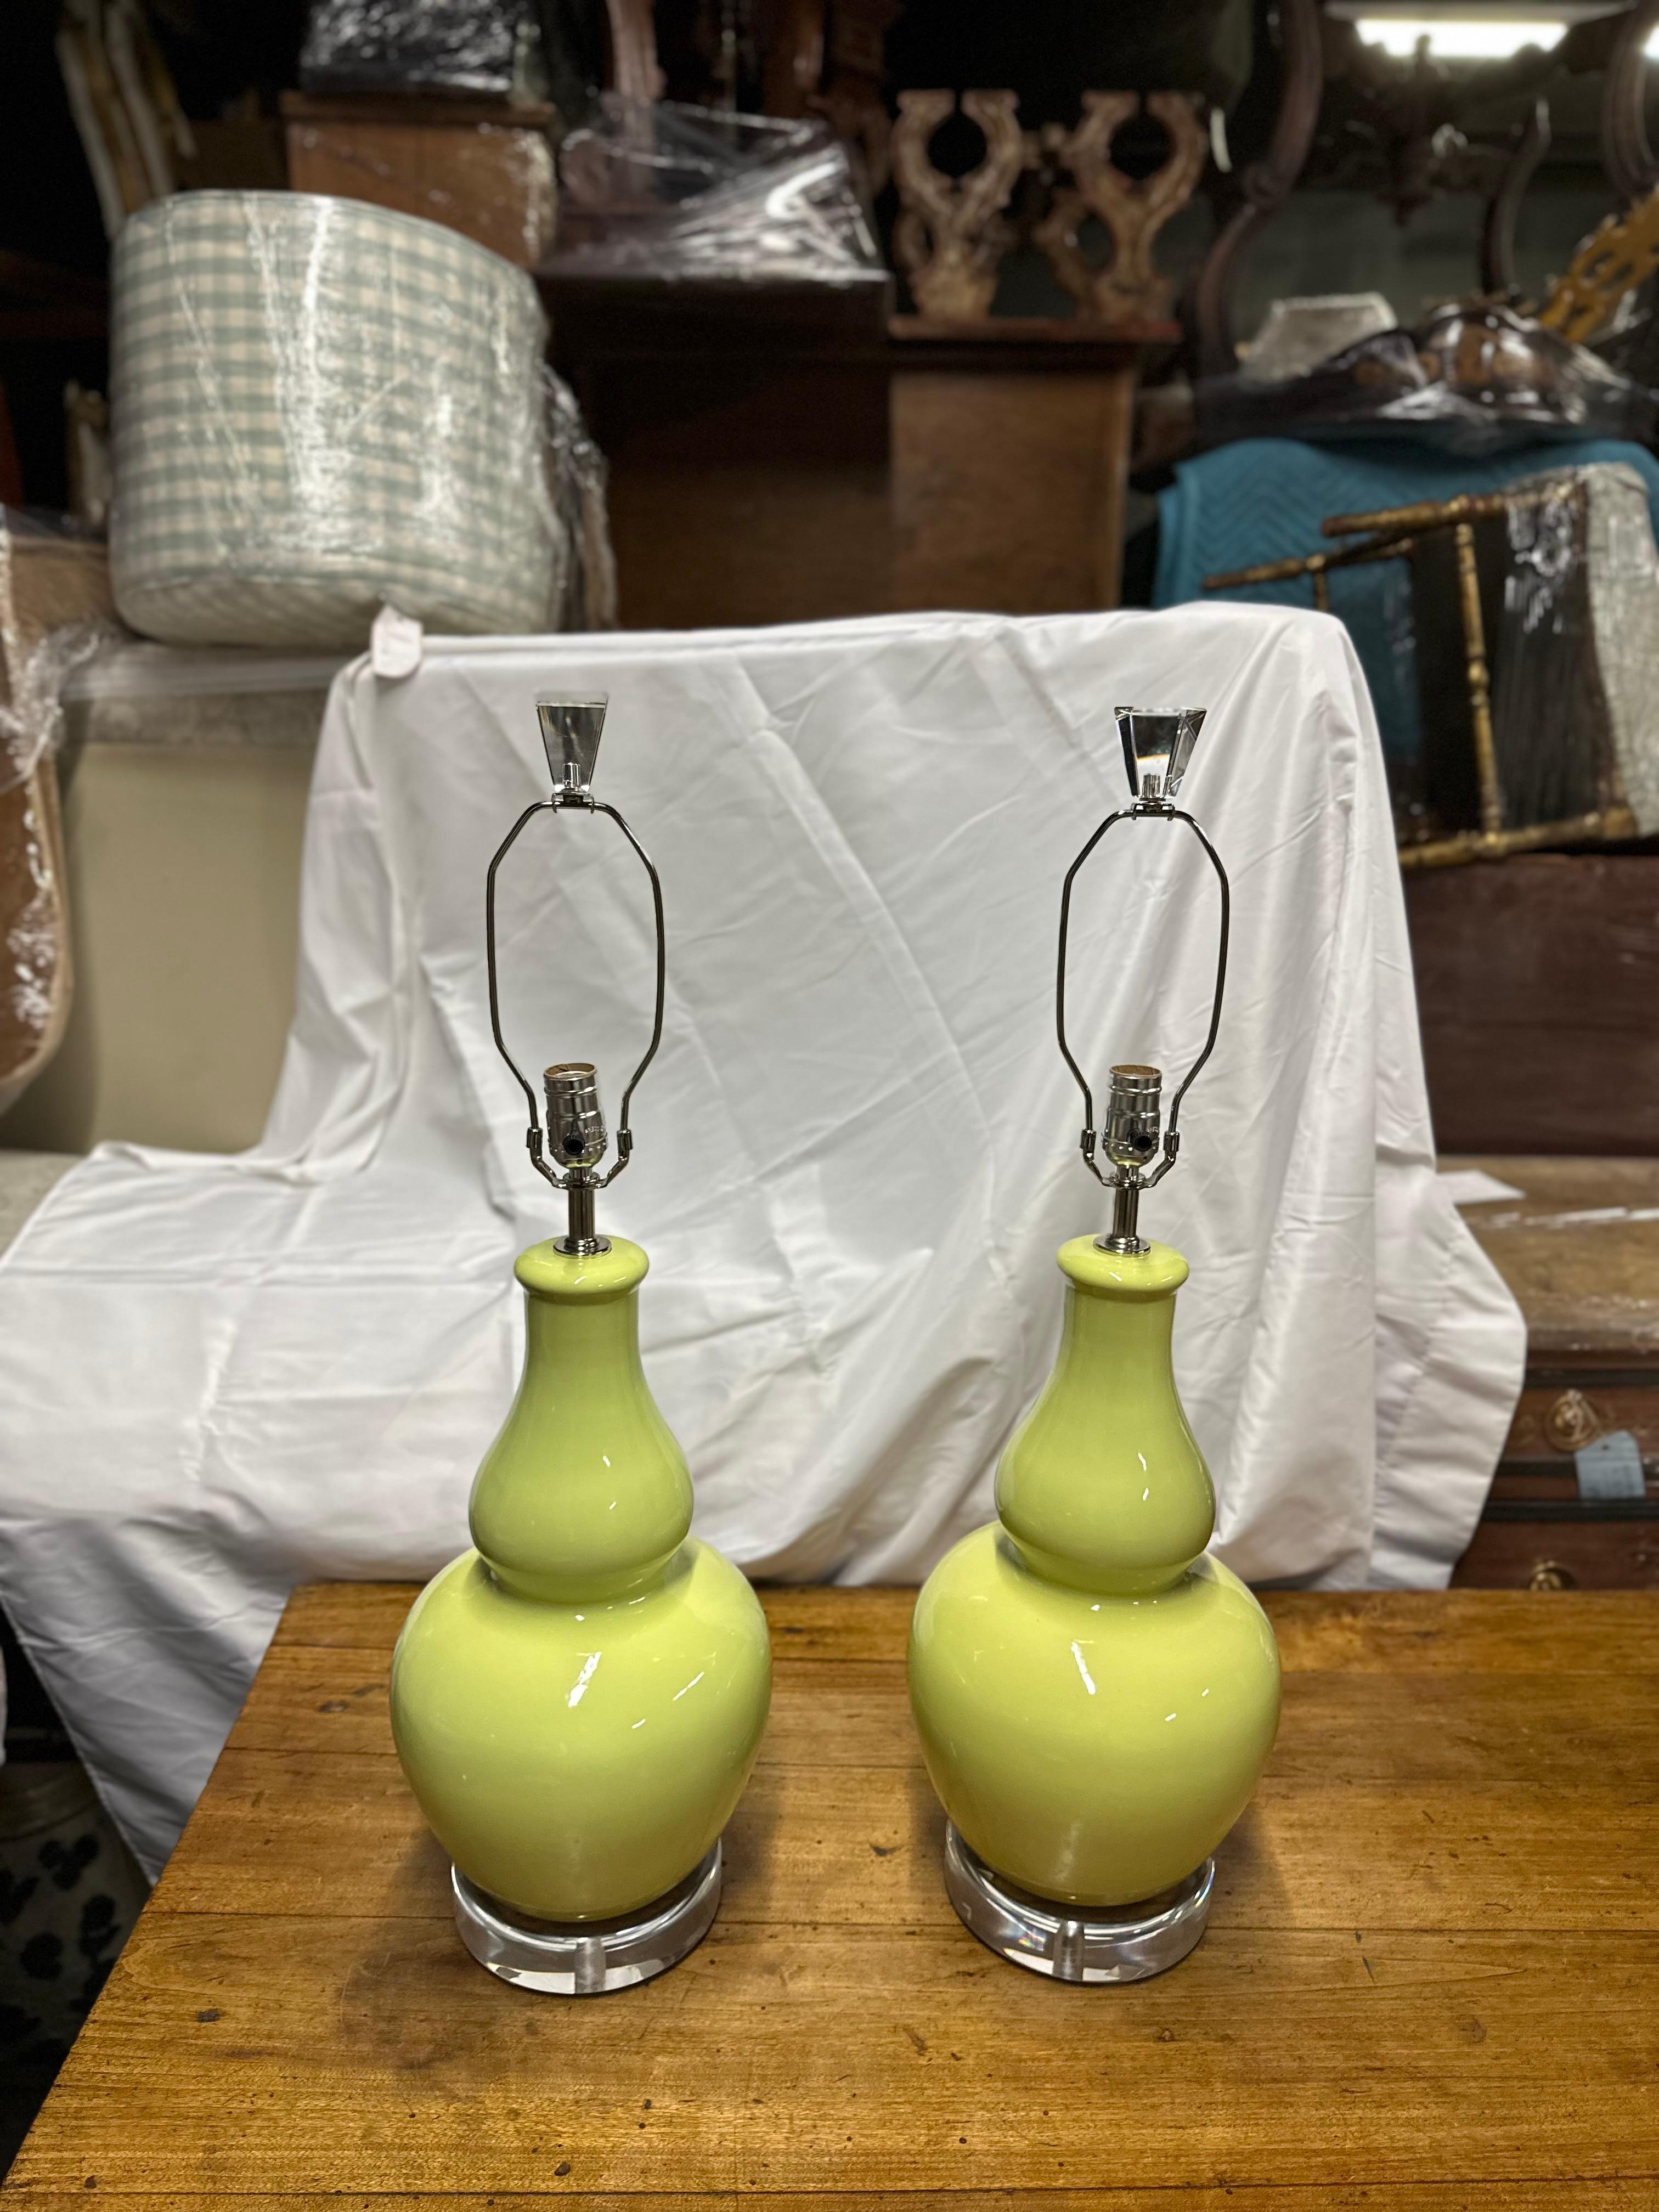 Der Hersteller dieser Lampen ist unbekannt.
Dieses Paar pistaziengrüner Keramiklampen mit Lampenschirmen und Sockeln aus Lucit strahlt Eleganz und moderne Raffinesse aus. Der sanfte, gedämpfte Farbton Pistaziengrün verleiht jedem Raum einen subtilen